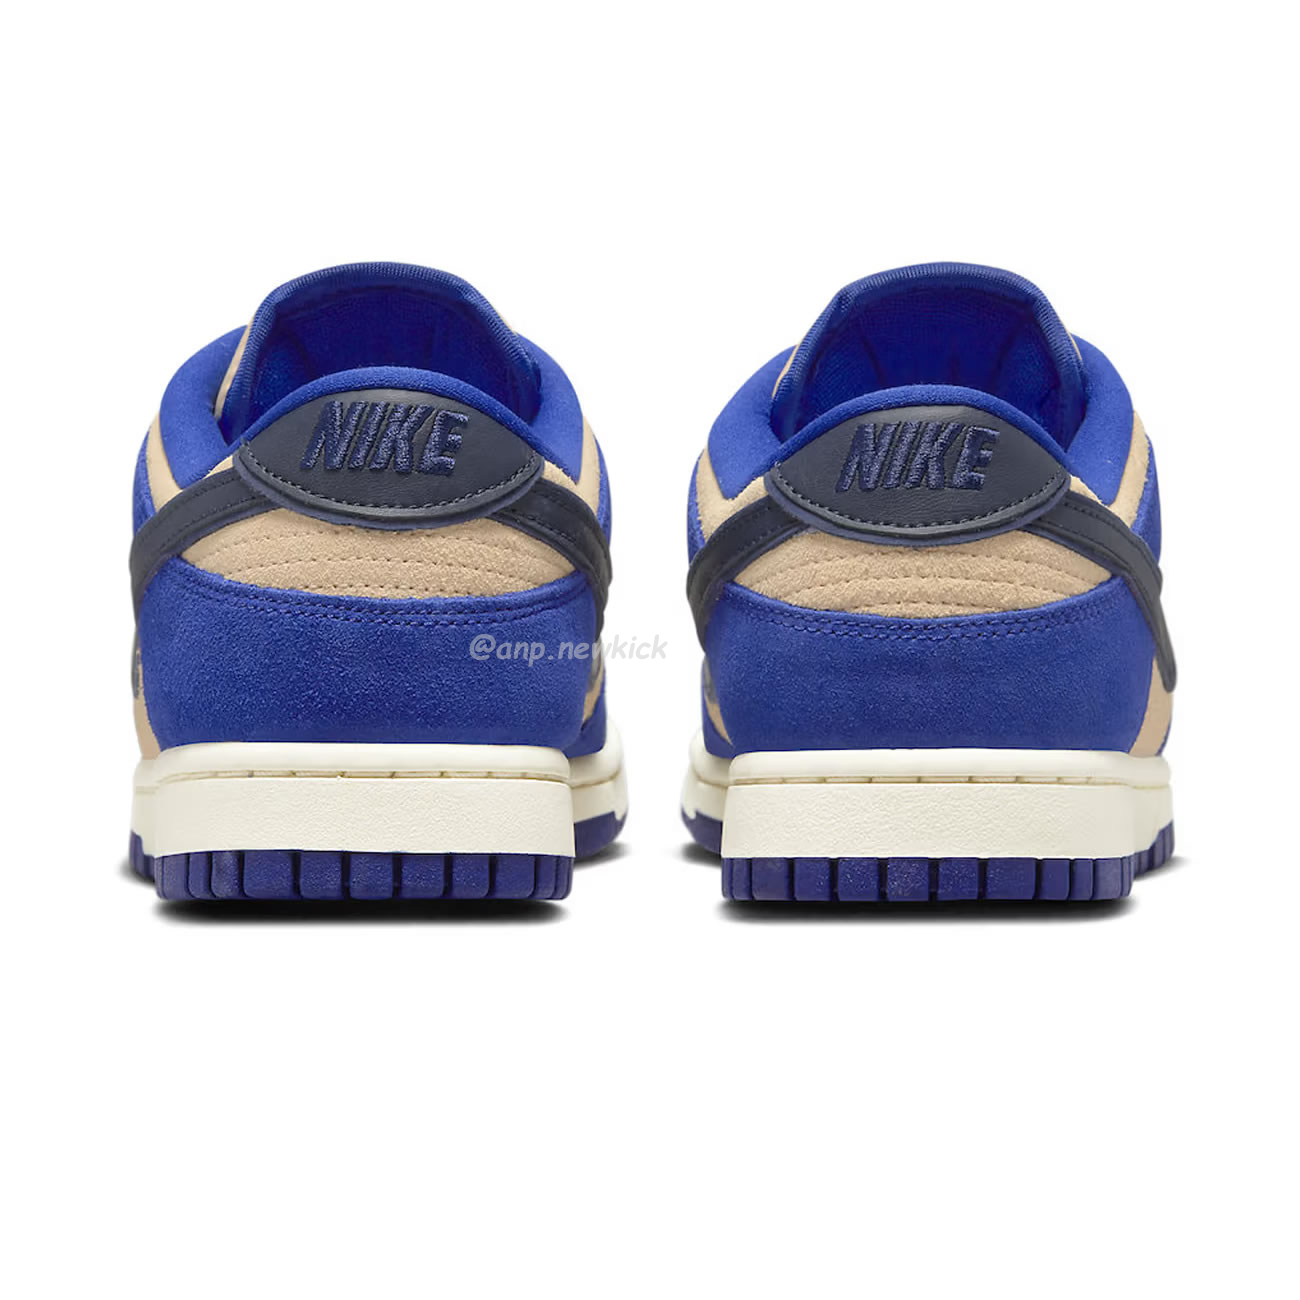 Nike Dunk Low LX Blue Suede (Women's) DV7411-400